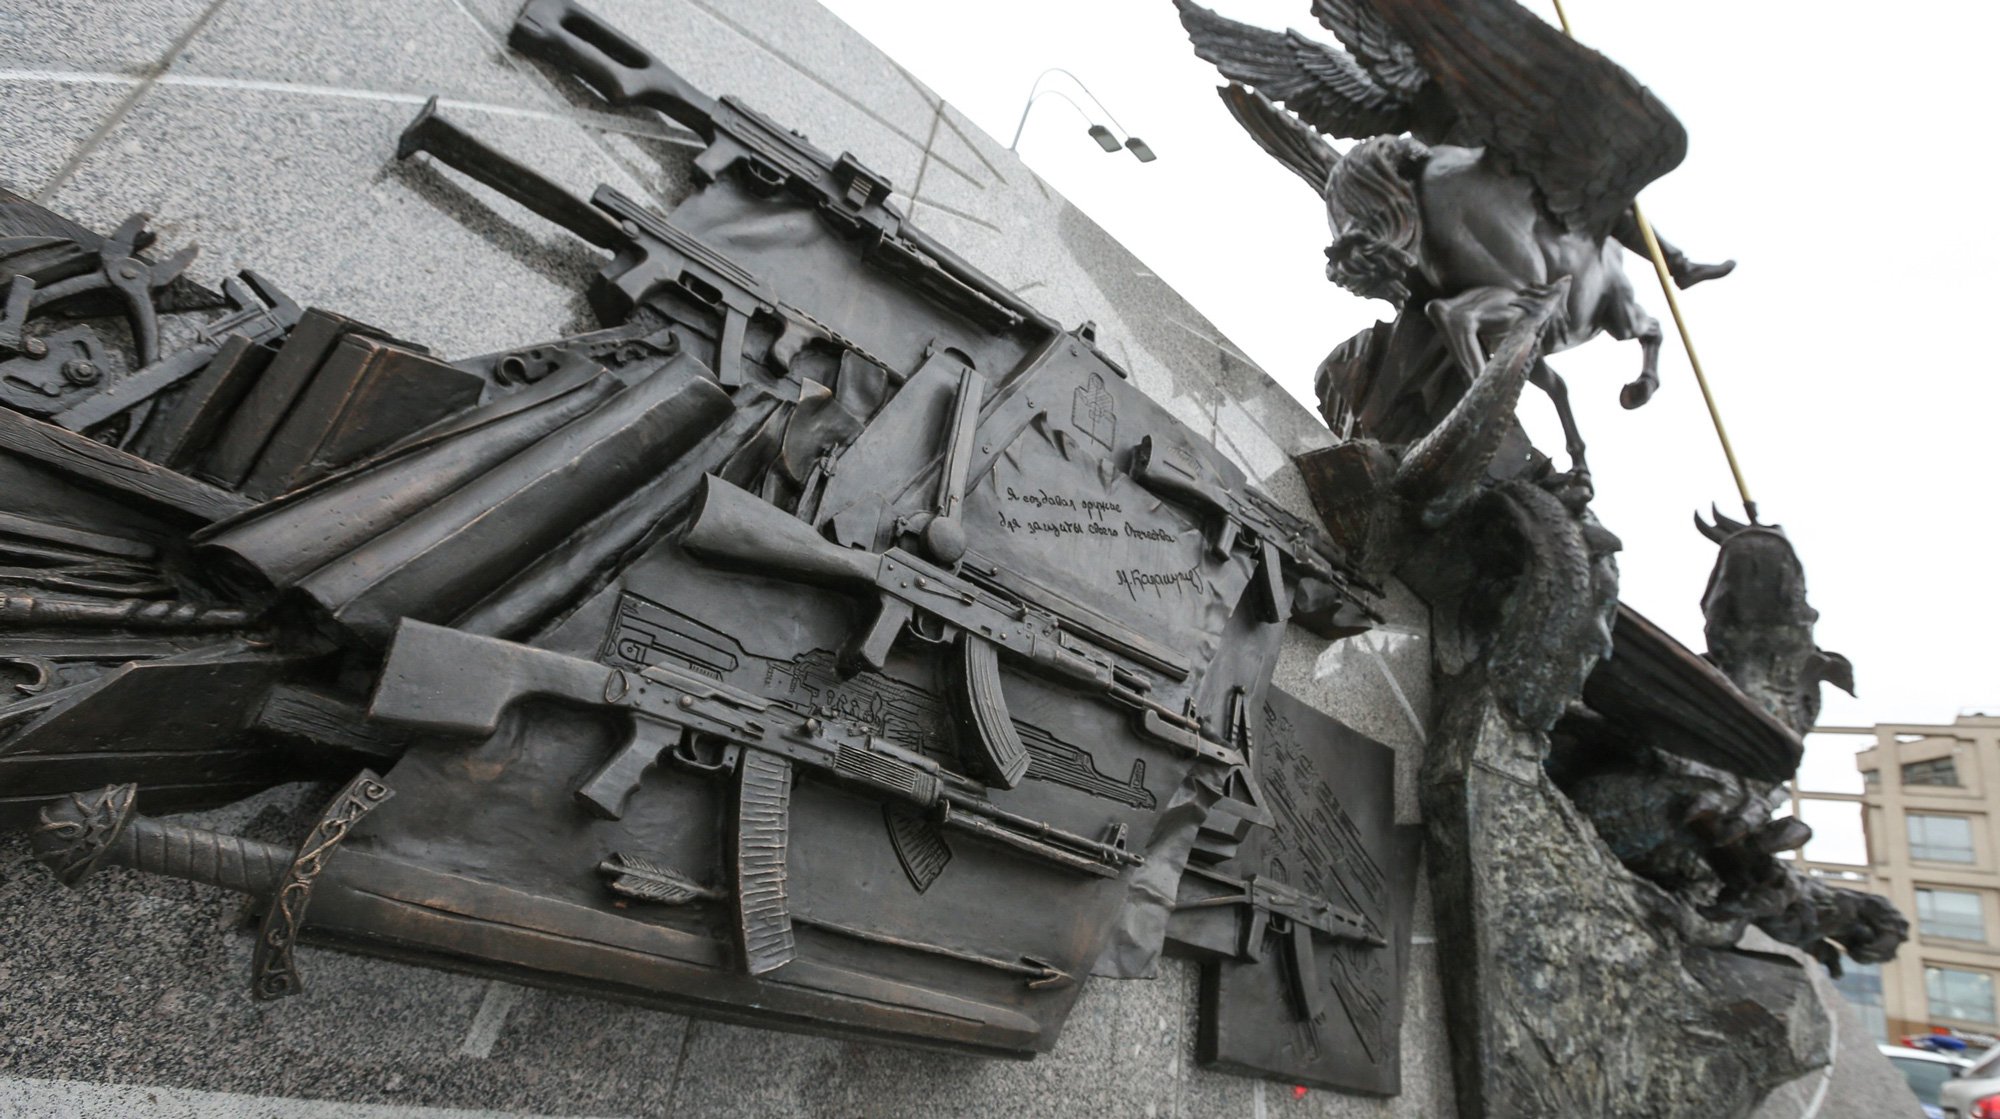 Dailystorm - Чертеж автомата Третьего рейха уберут с памятника Калашникову